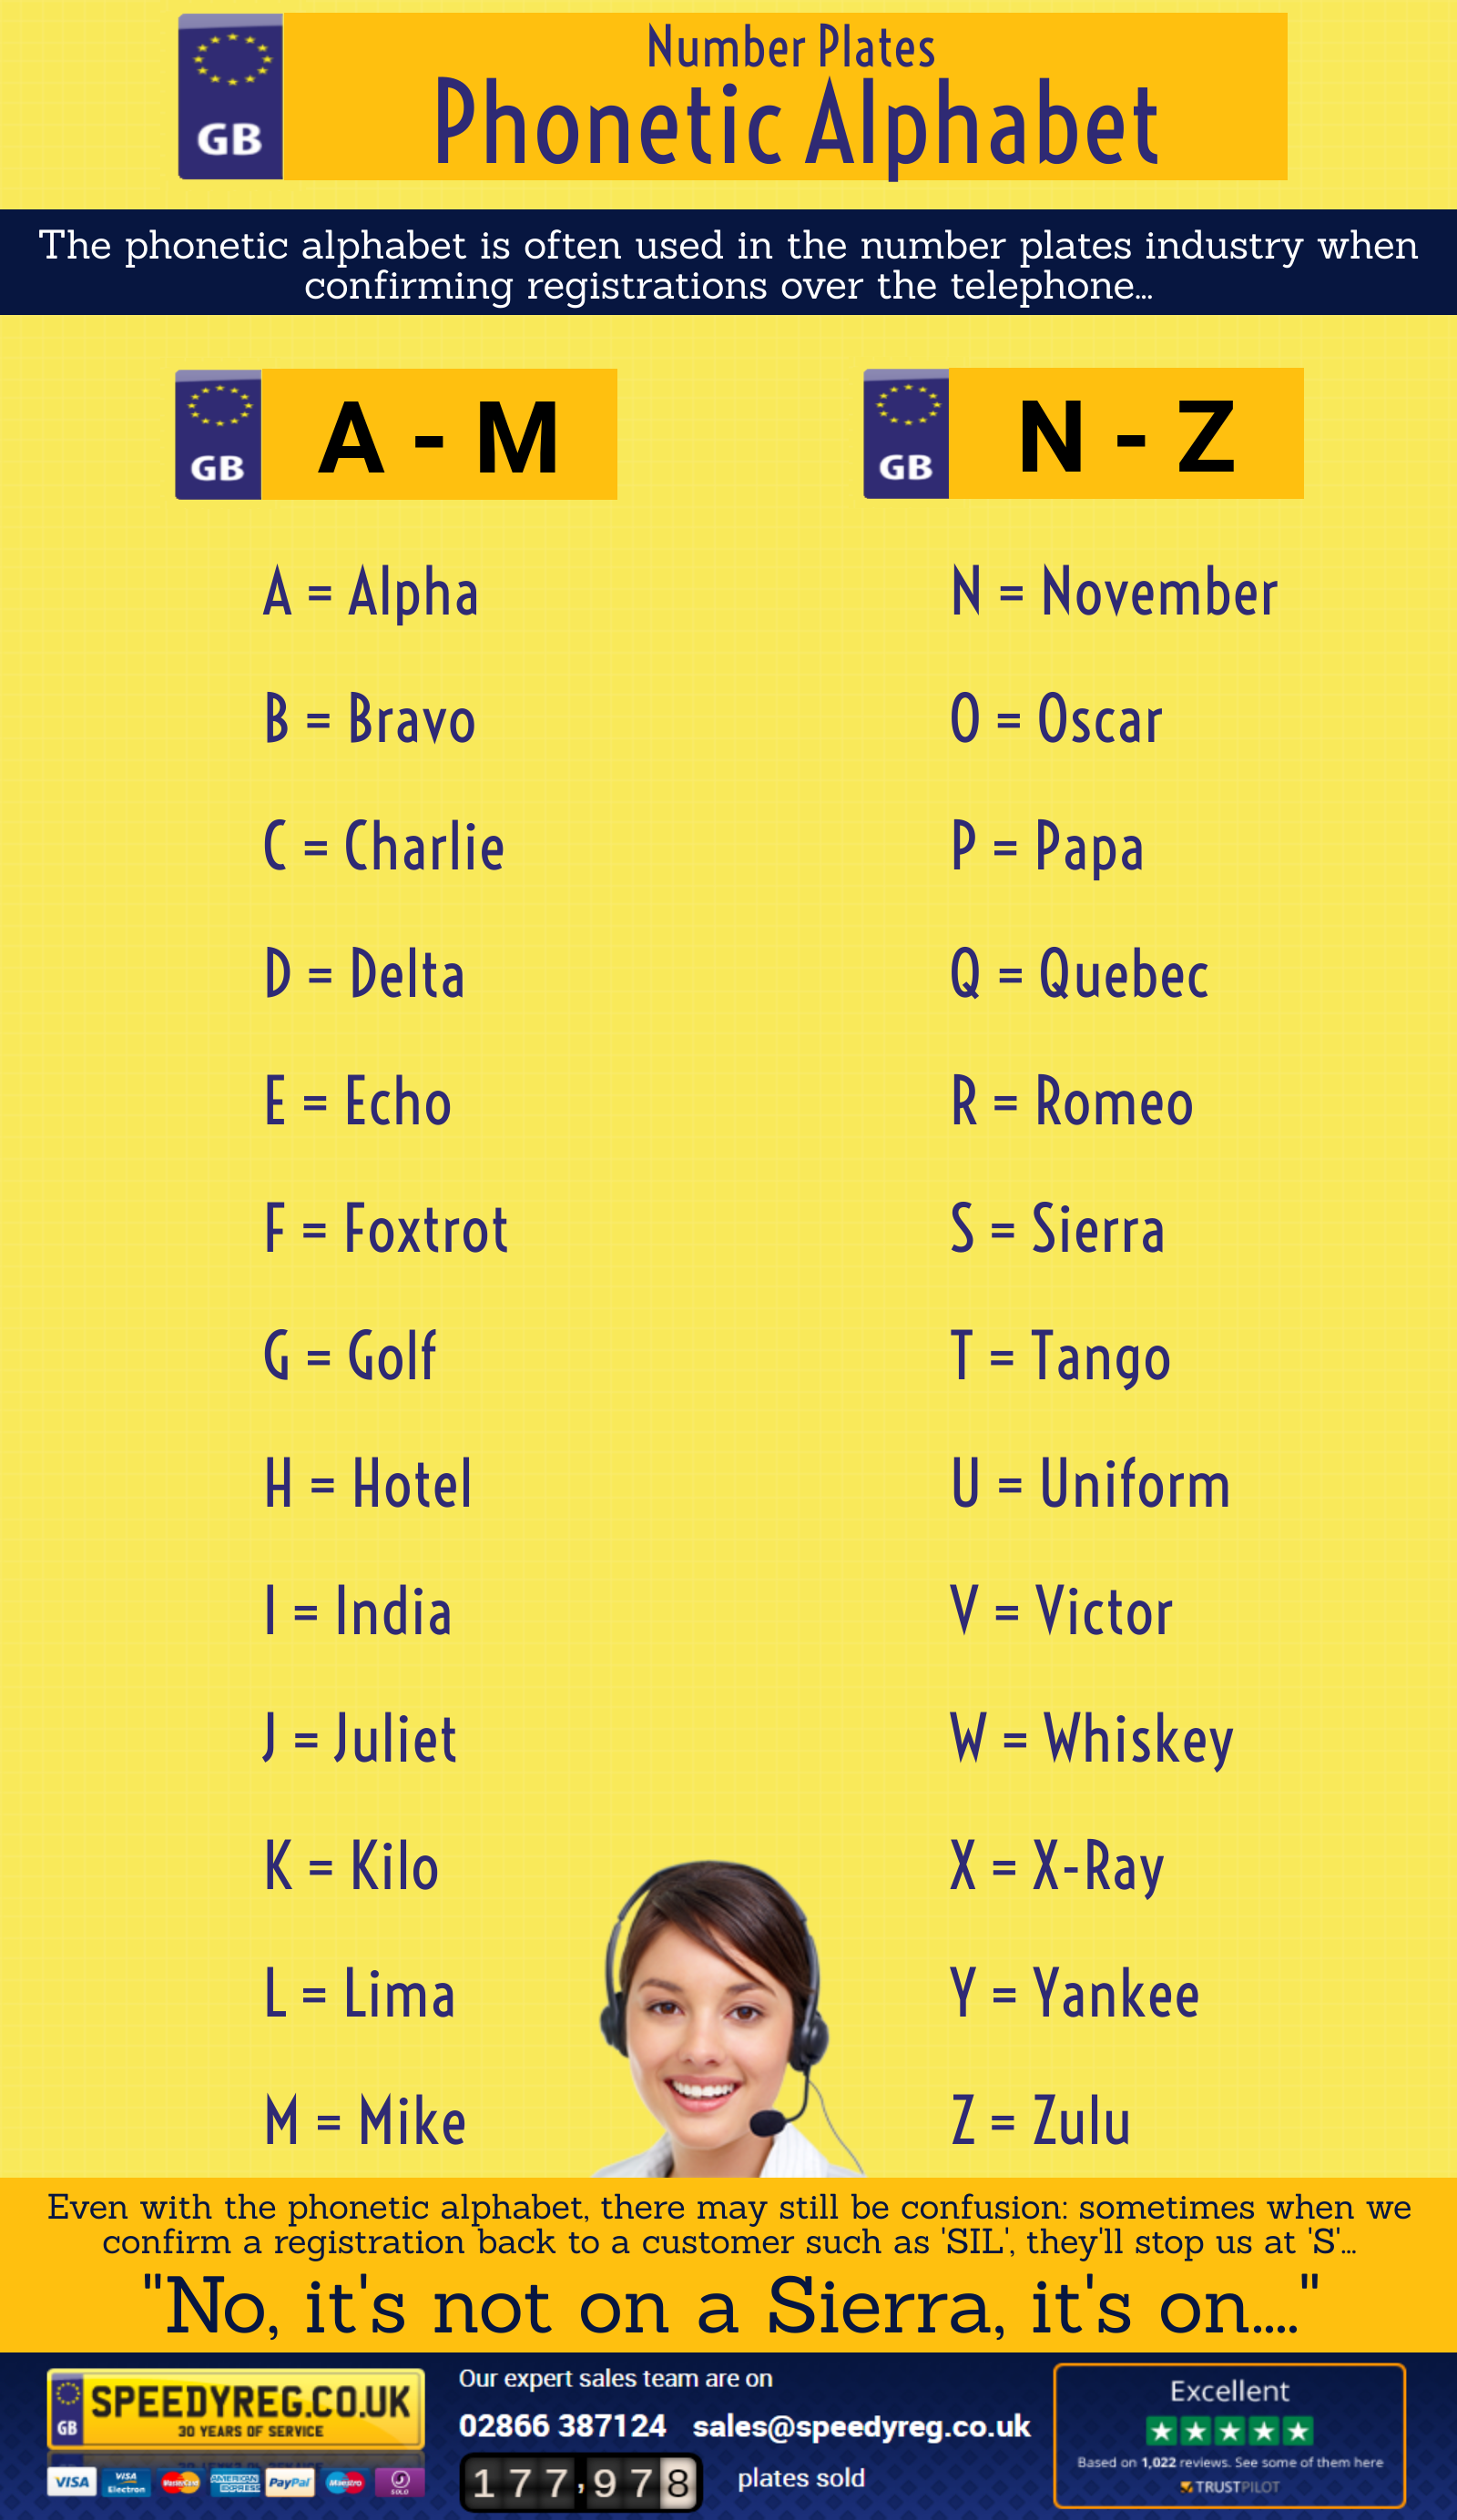 Phonetic Alphabet Infographic